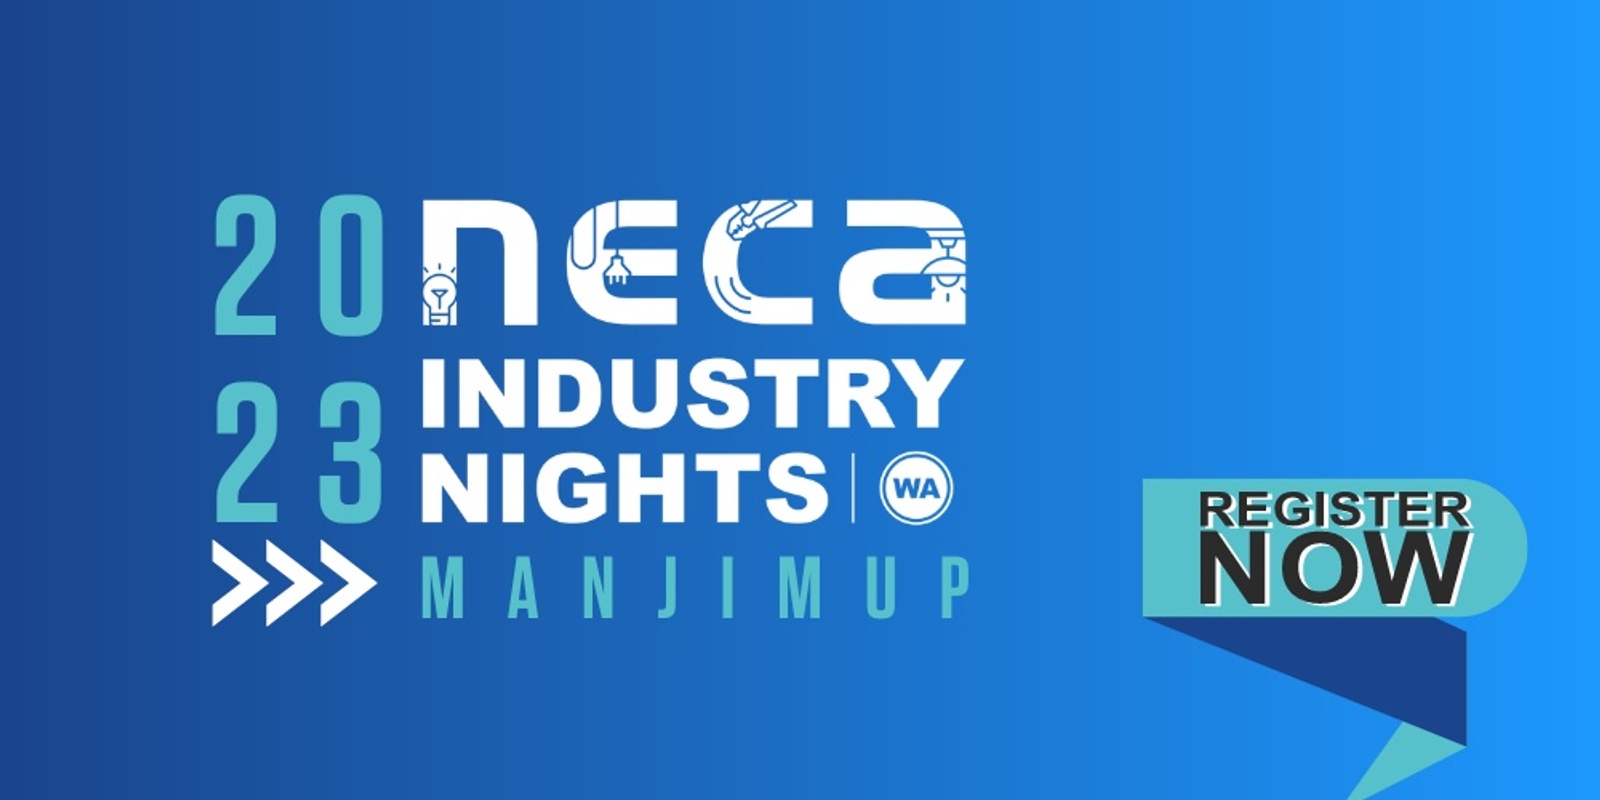 Banner image for 2023 NECA WA Industry Night - Manjimup